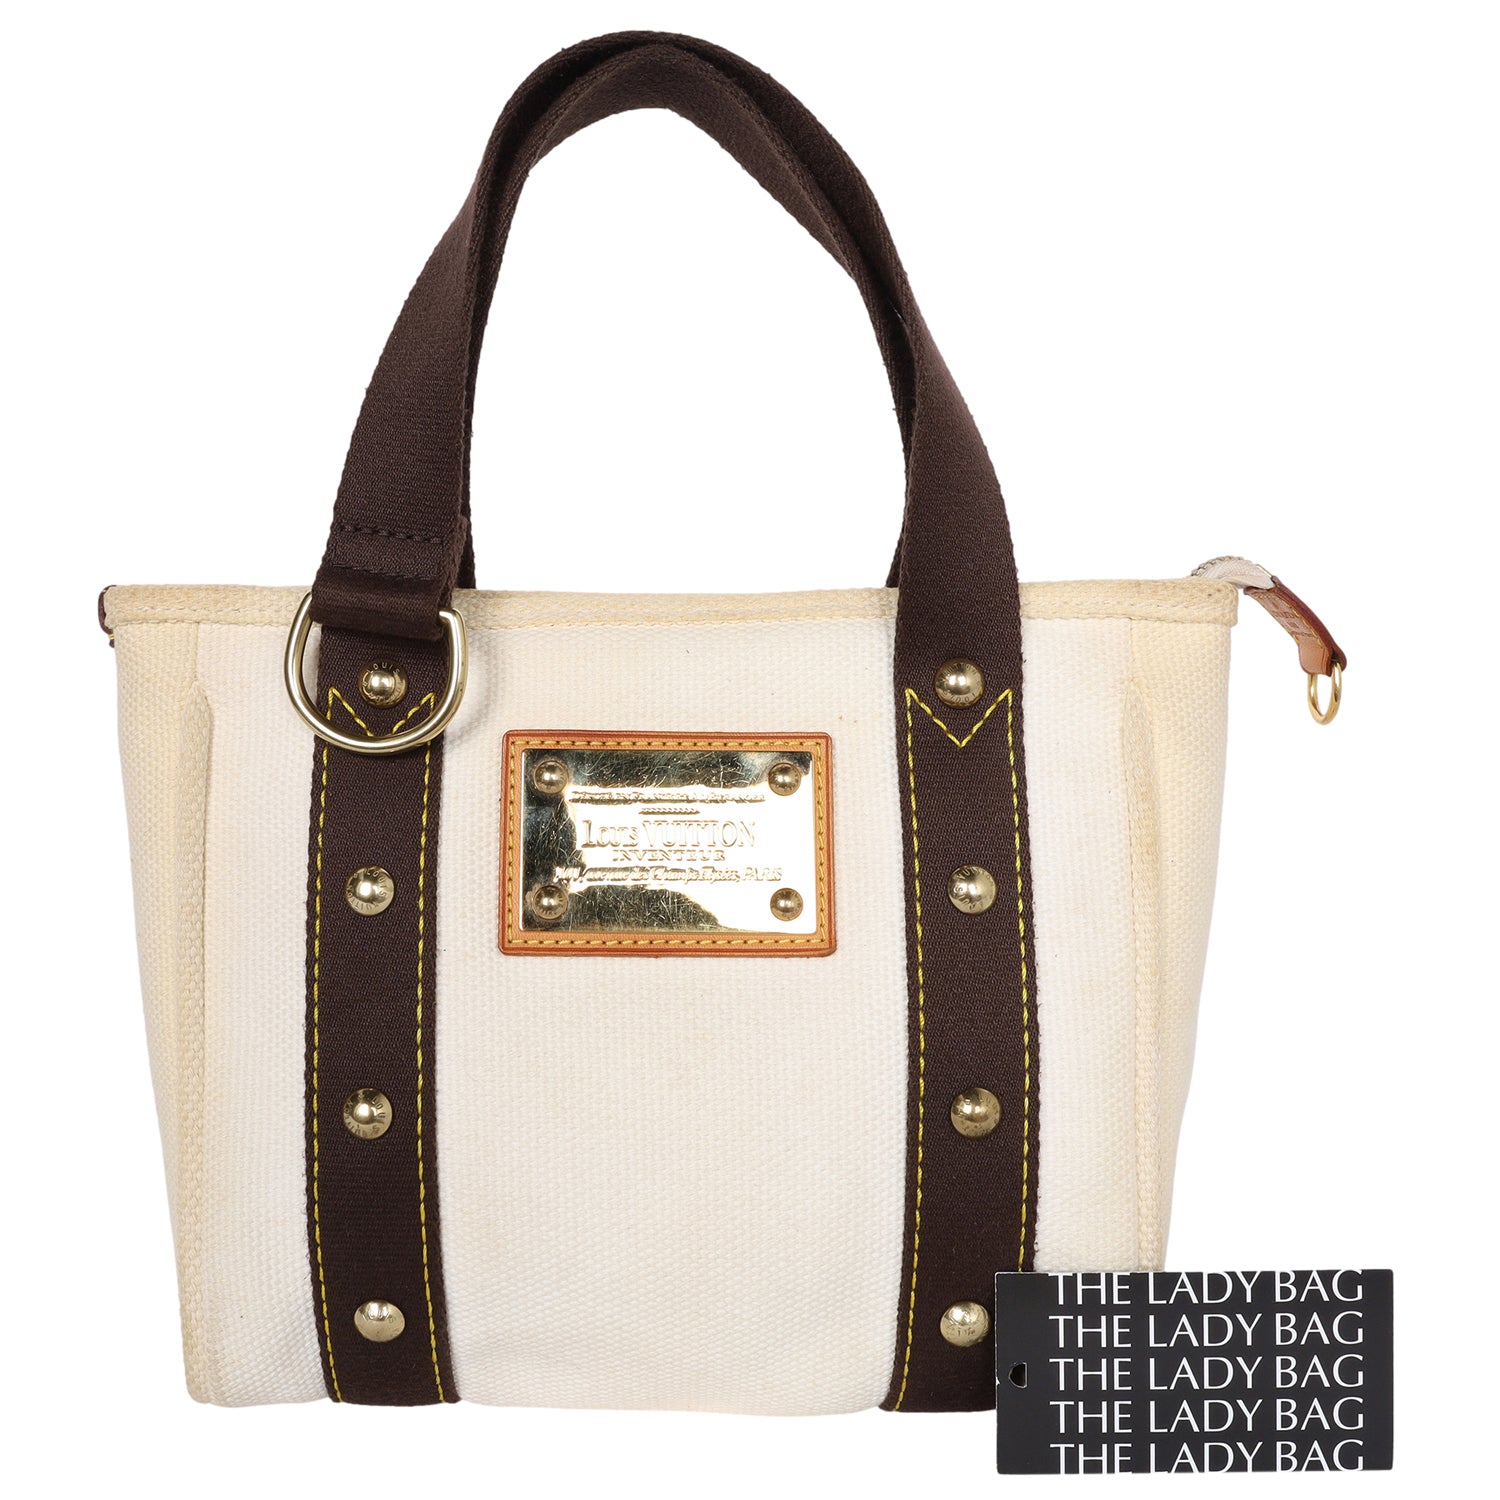 Louis Vuitton Antigua Beige Canvas Shoulder Bag (Pre-Owned)